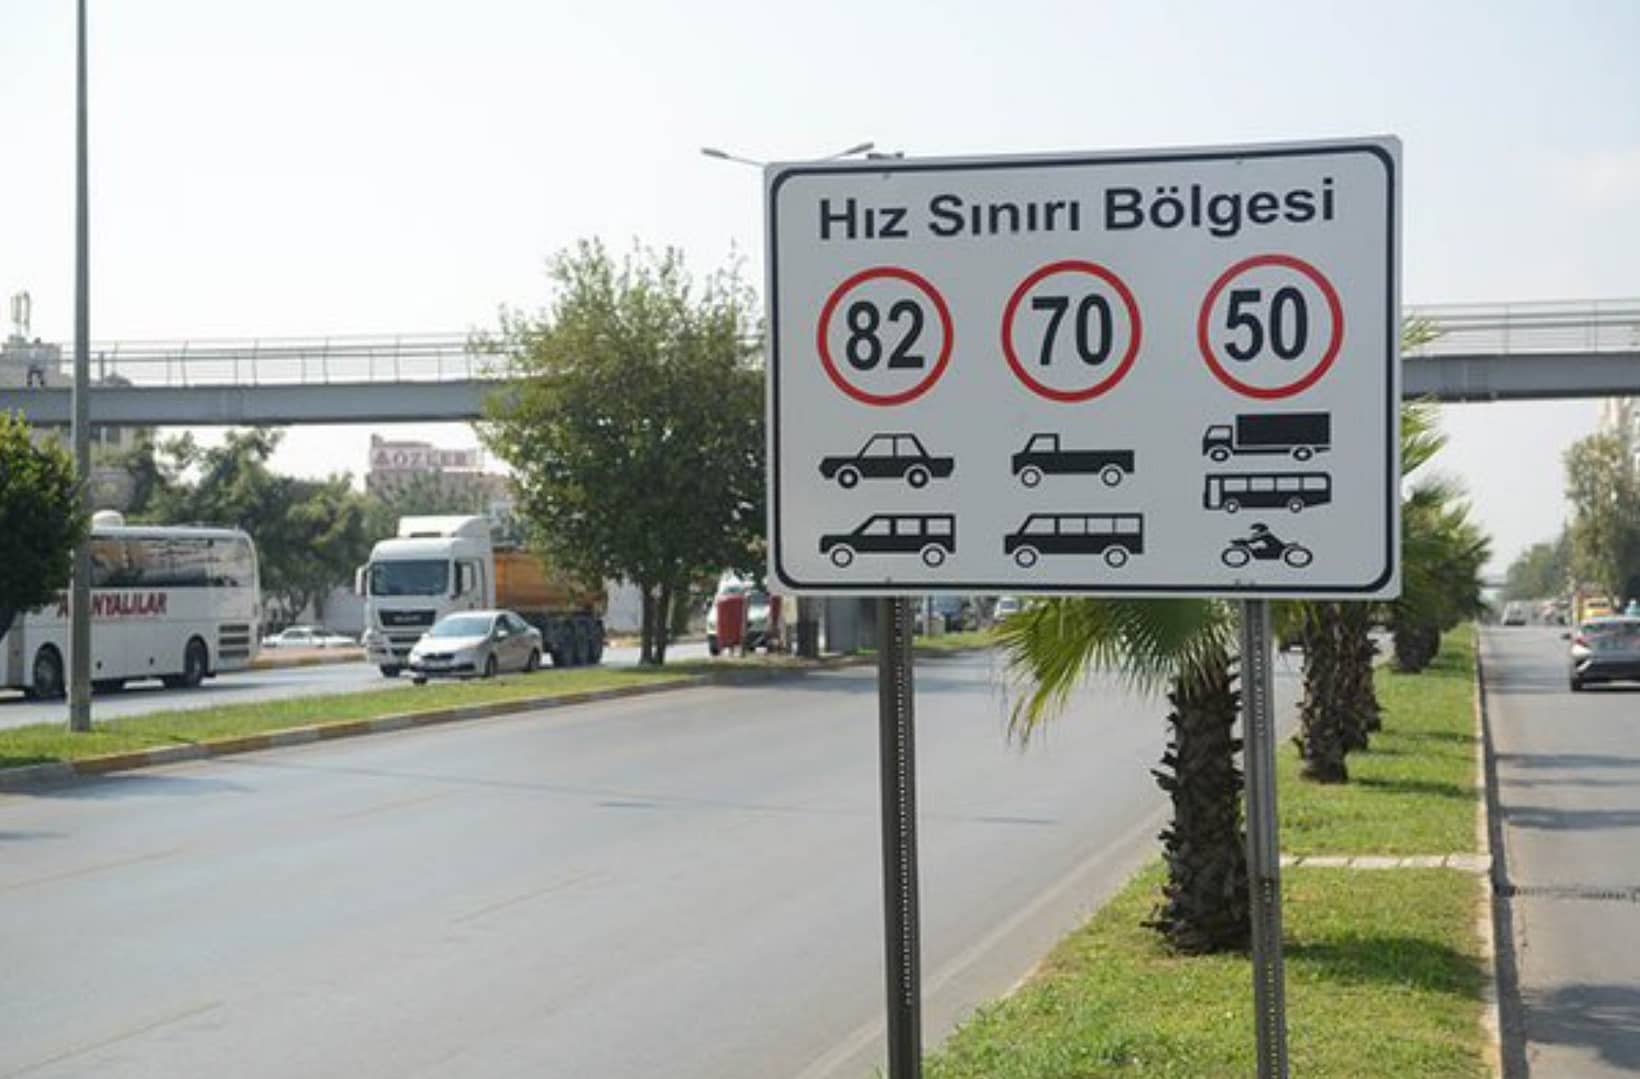 limite di velocità in turchia a 82kmh